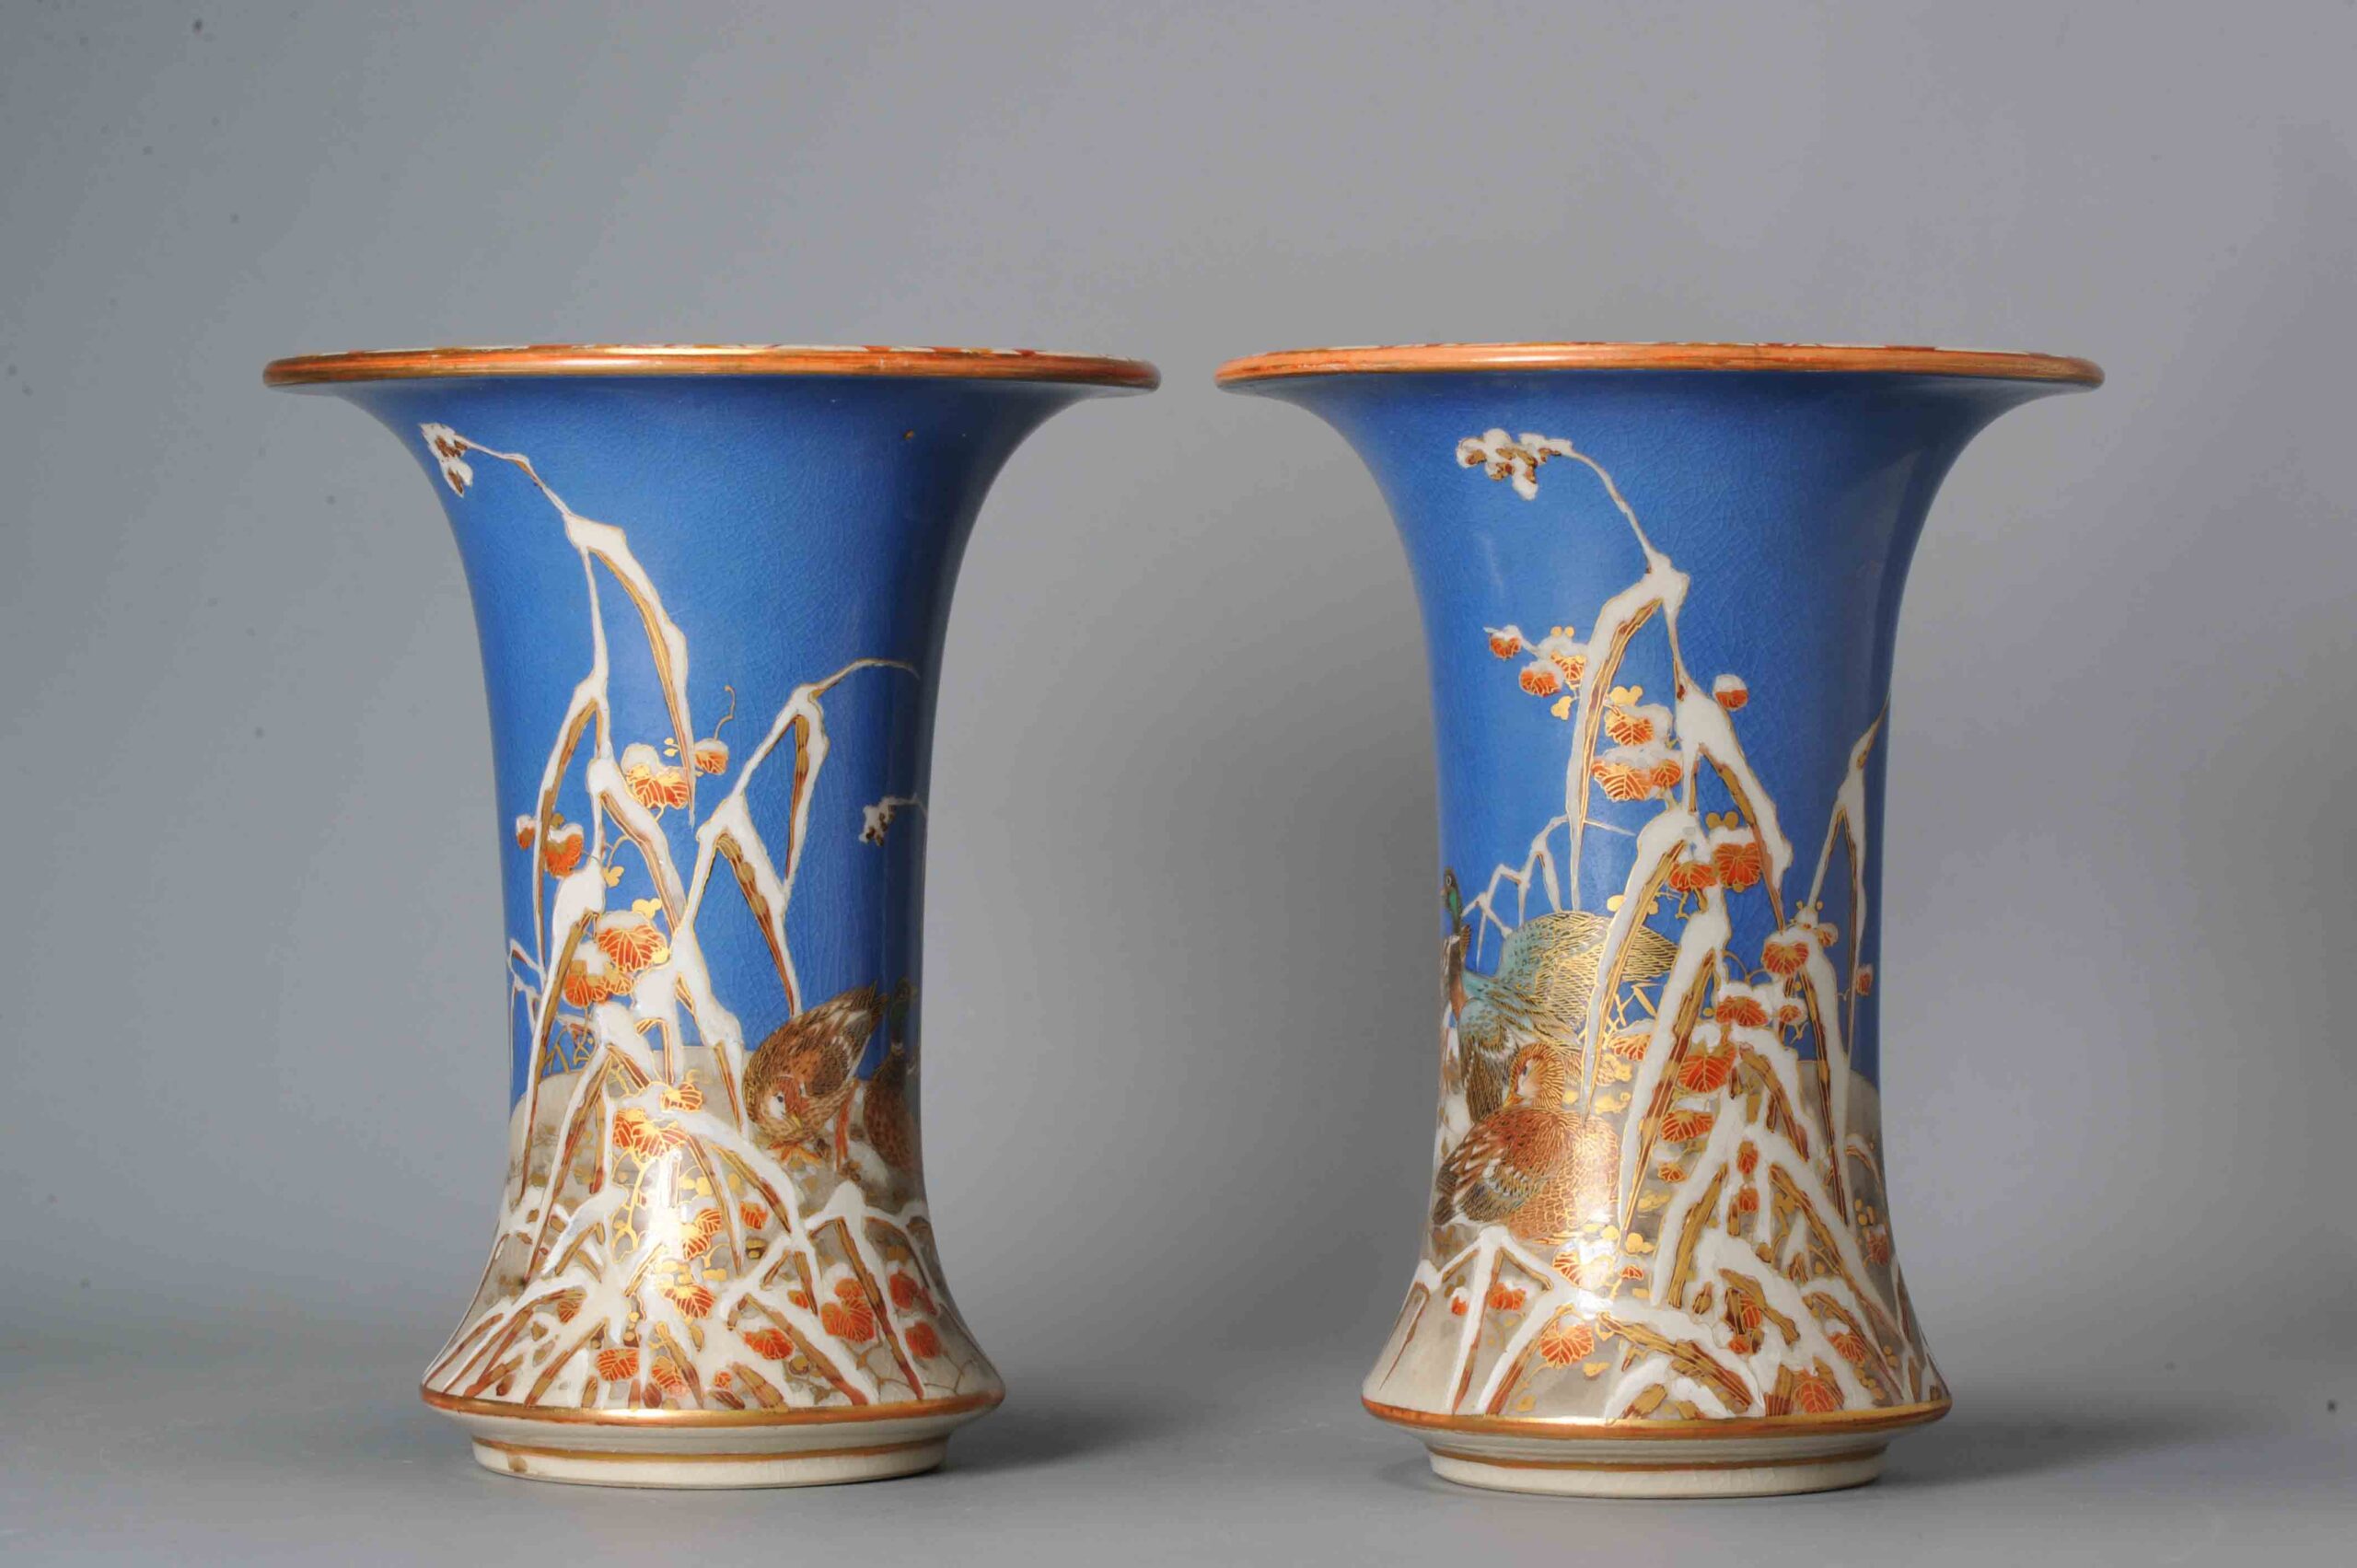 Pair  Antique Meiji Japanese Satsuma Vases 19C Japan with Blue glaze. Snow Landscape. Rare!